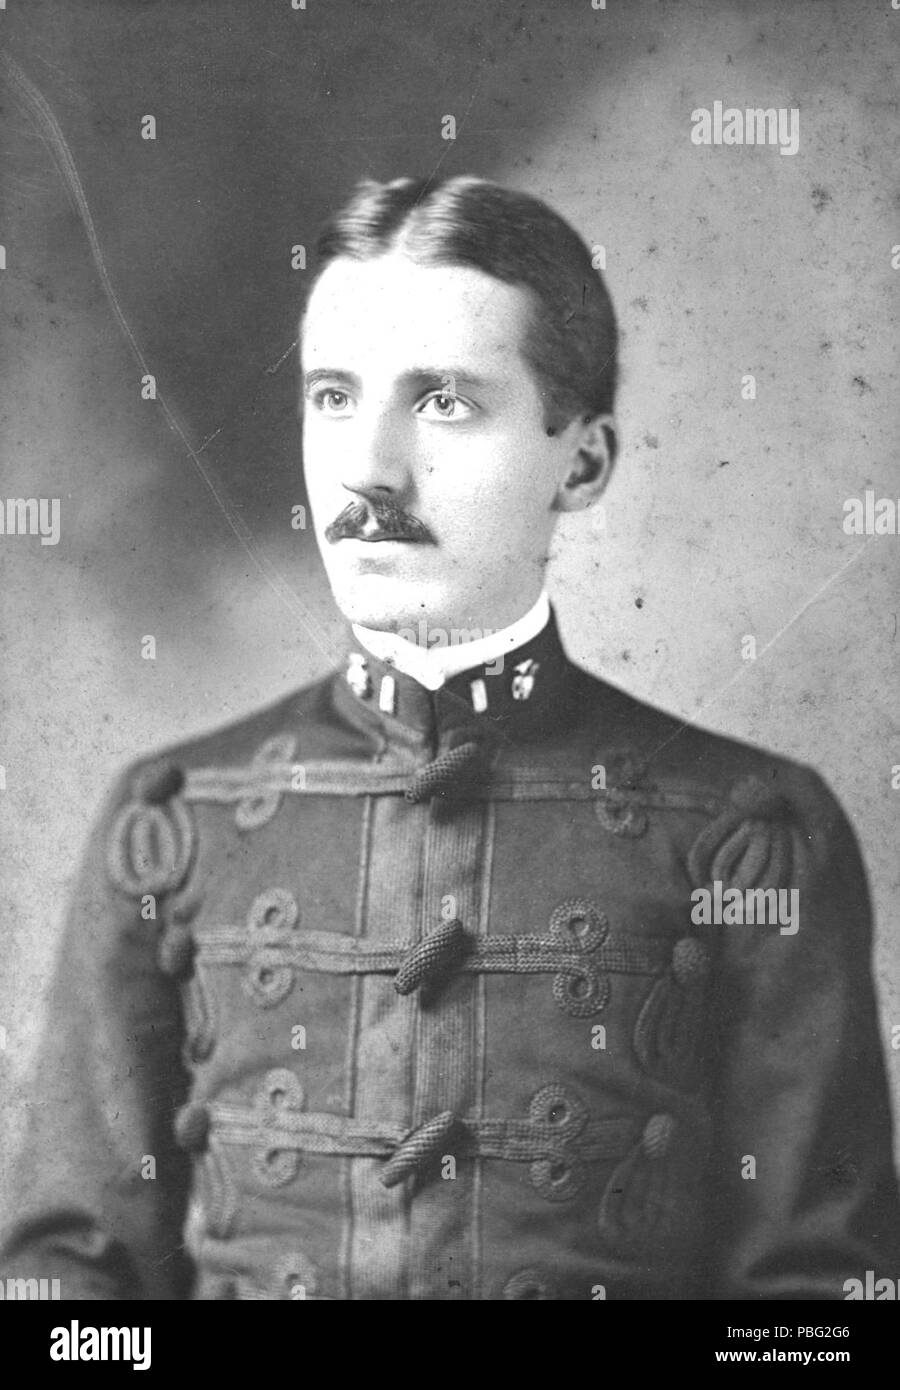 1546 Smedley Butler, circa 1898 (6141243540 Stock Photo - Alamy